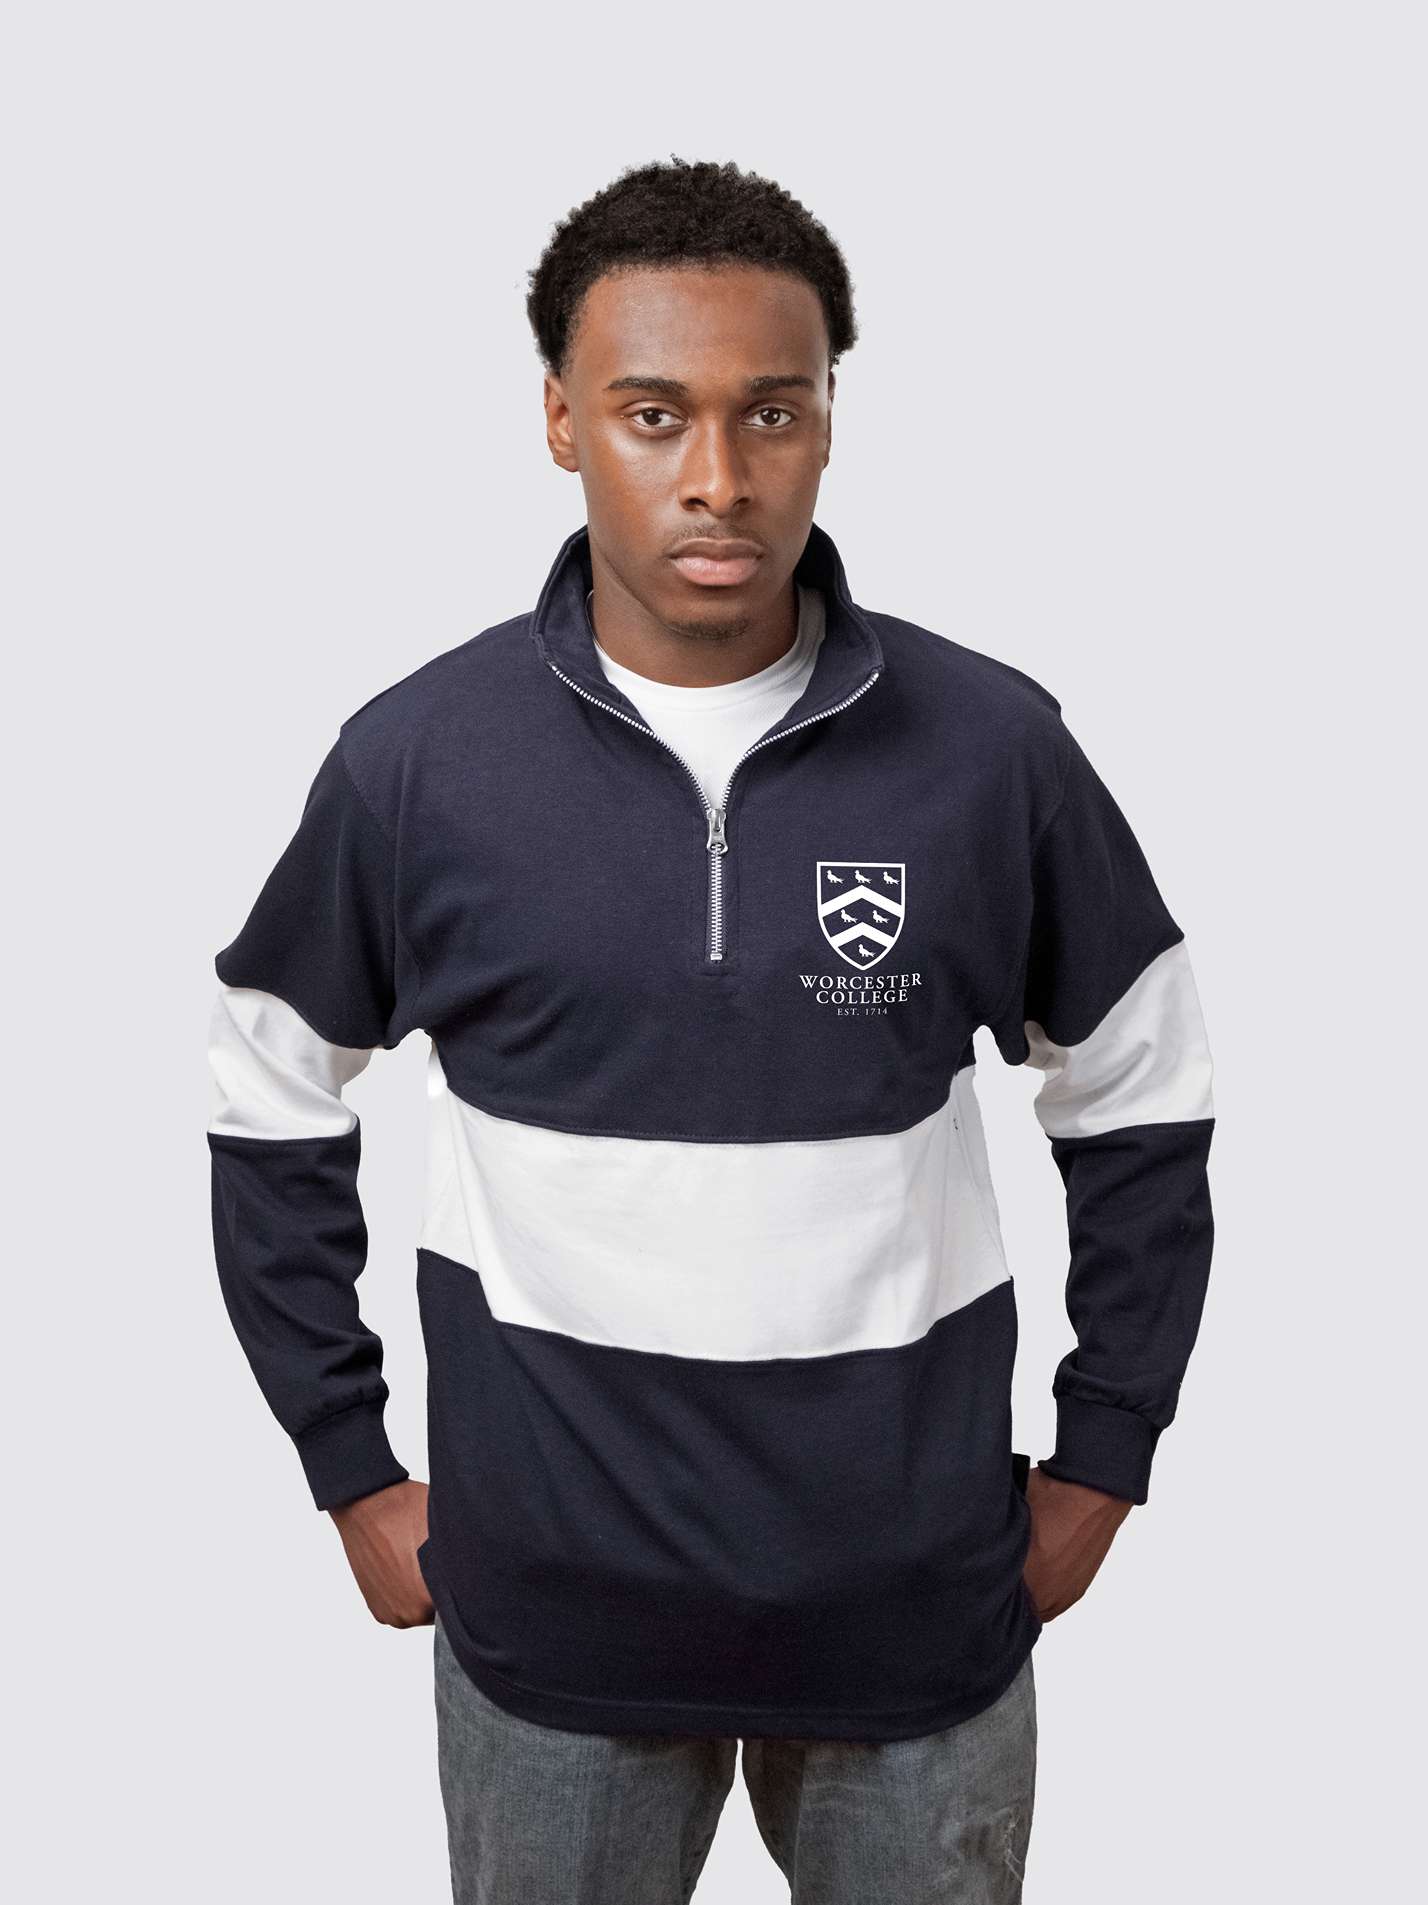 Worcester College Oxford JCR Unisex Panelled 1/4 Zip Sweatshirt